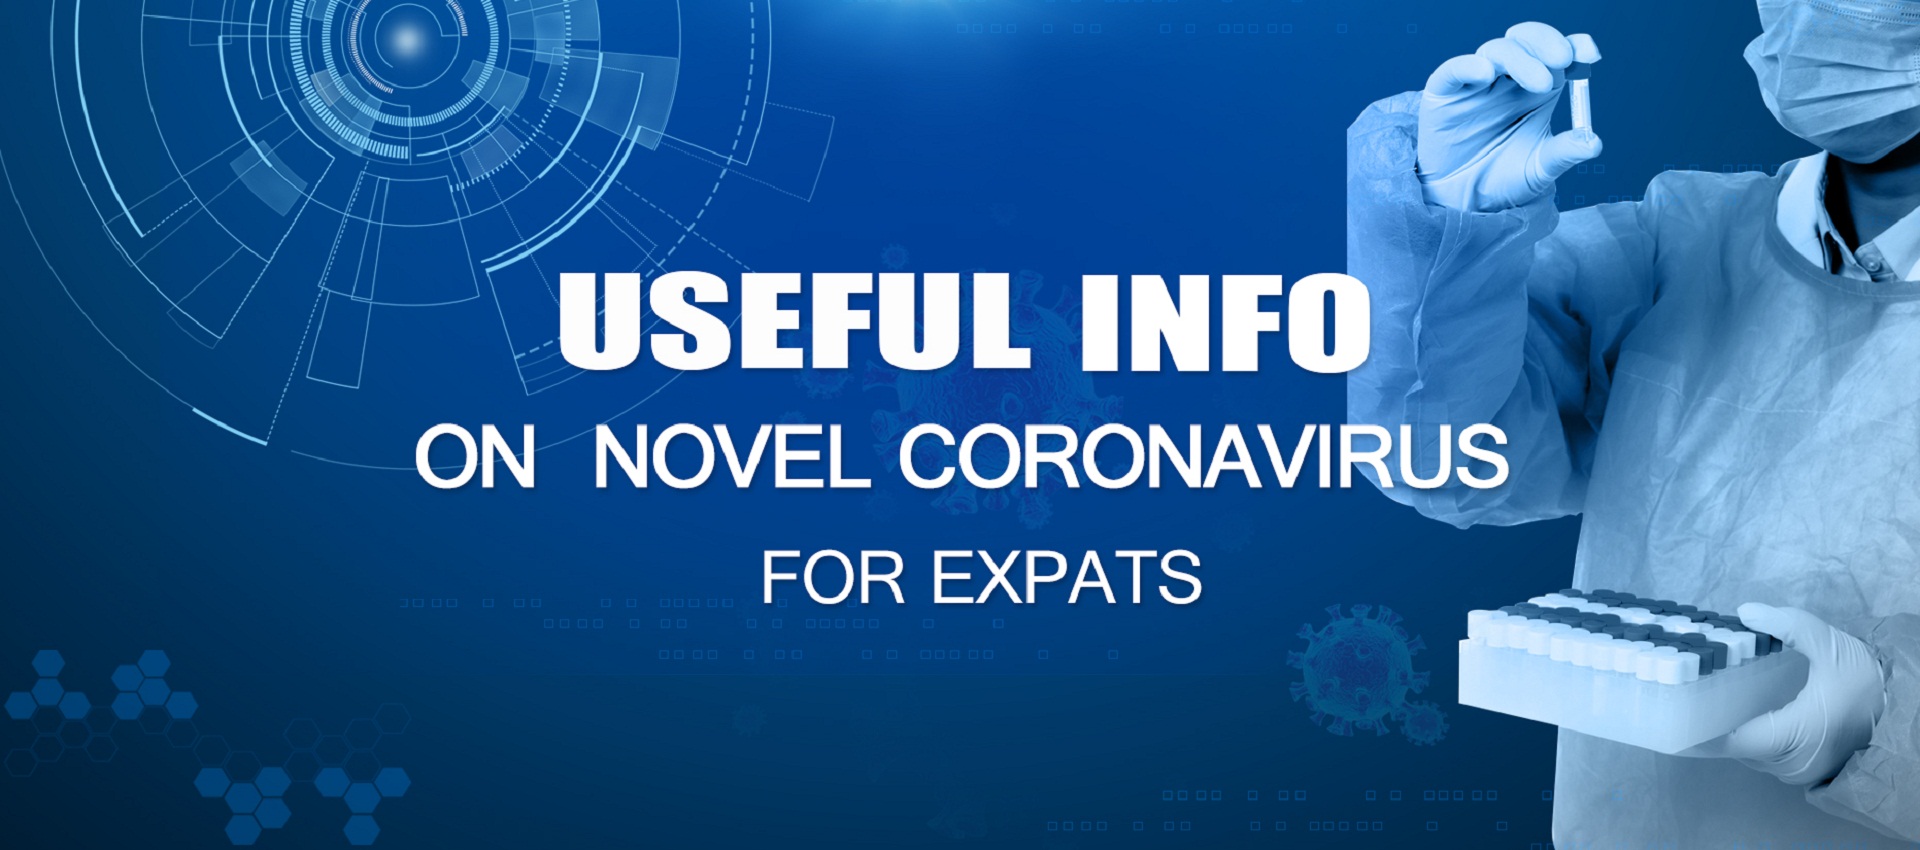 Nantong hospitals join fight against novel coronavirus